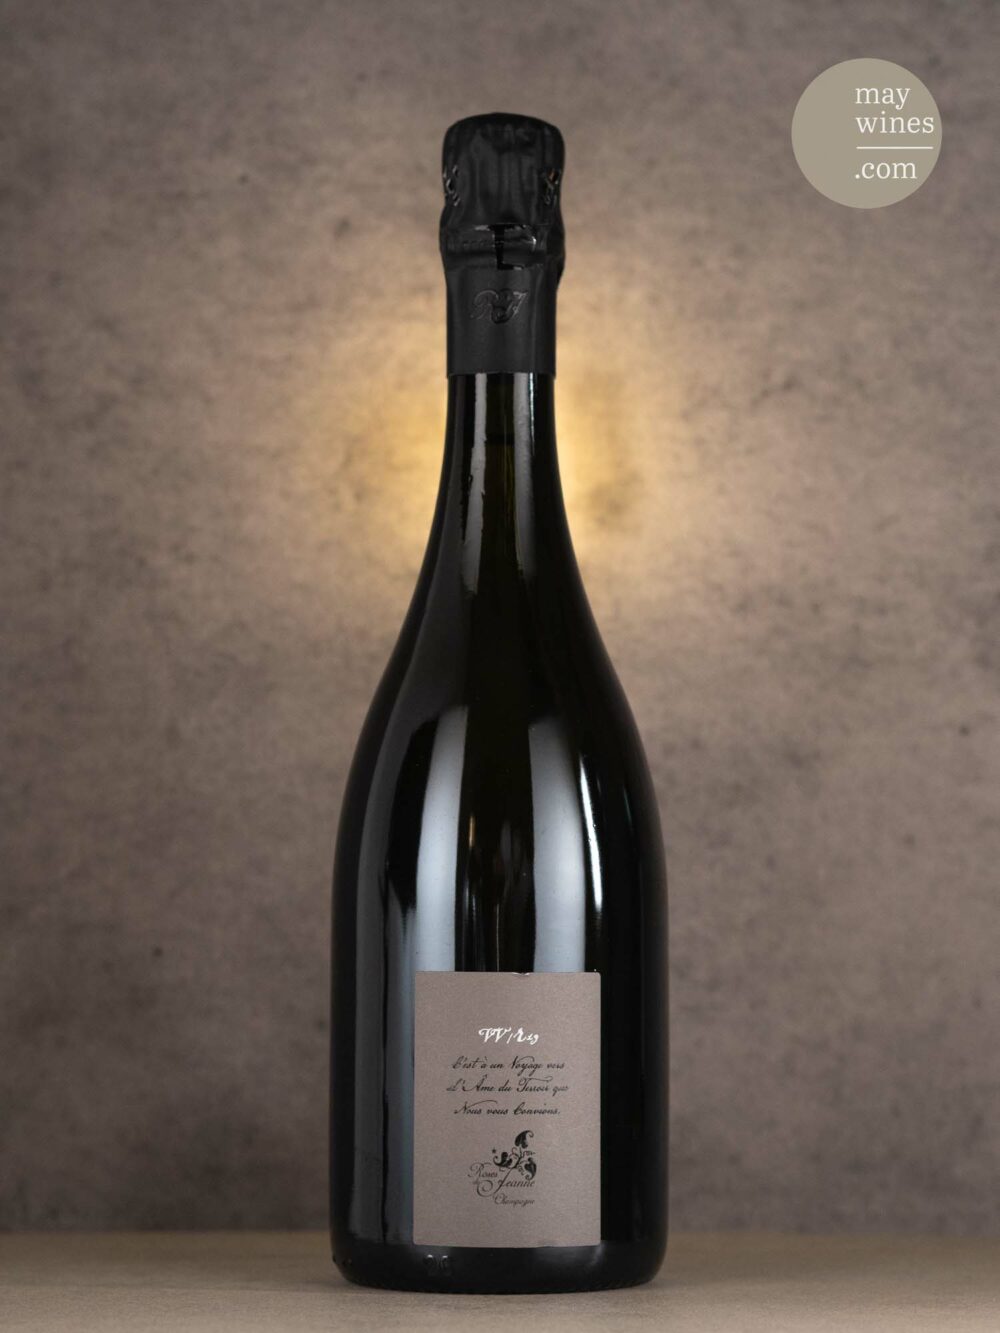 May Wines – Champagner – 2019 VV/R19 - Côte de Val Vilaine Blanc de Noirs - Cédric Bouchard Roses de Jeanne